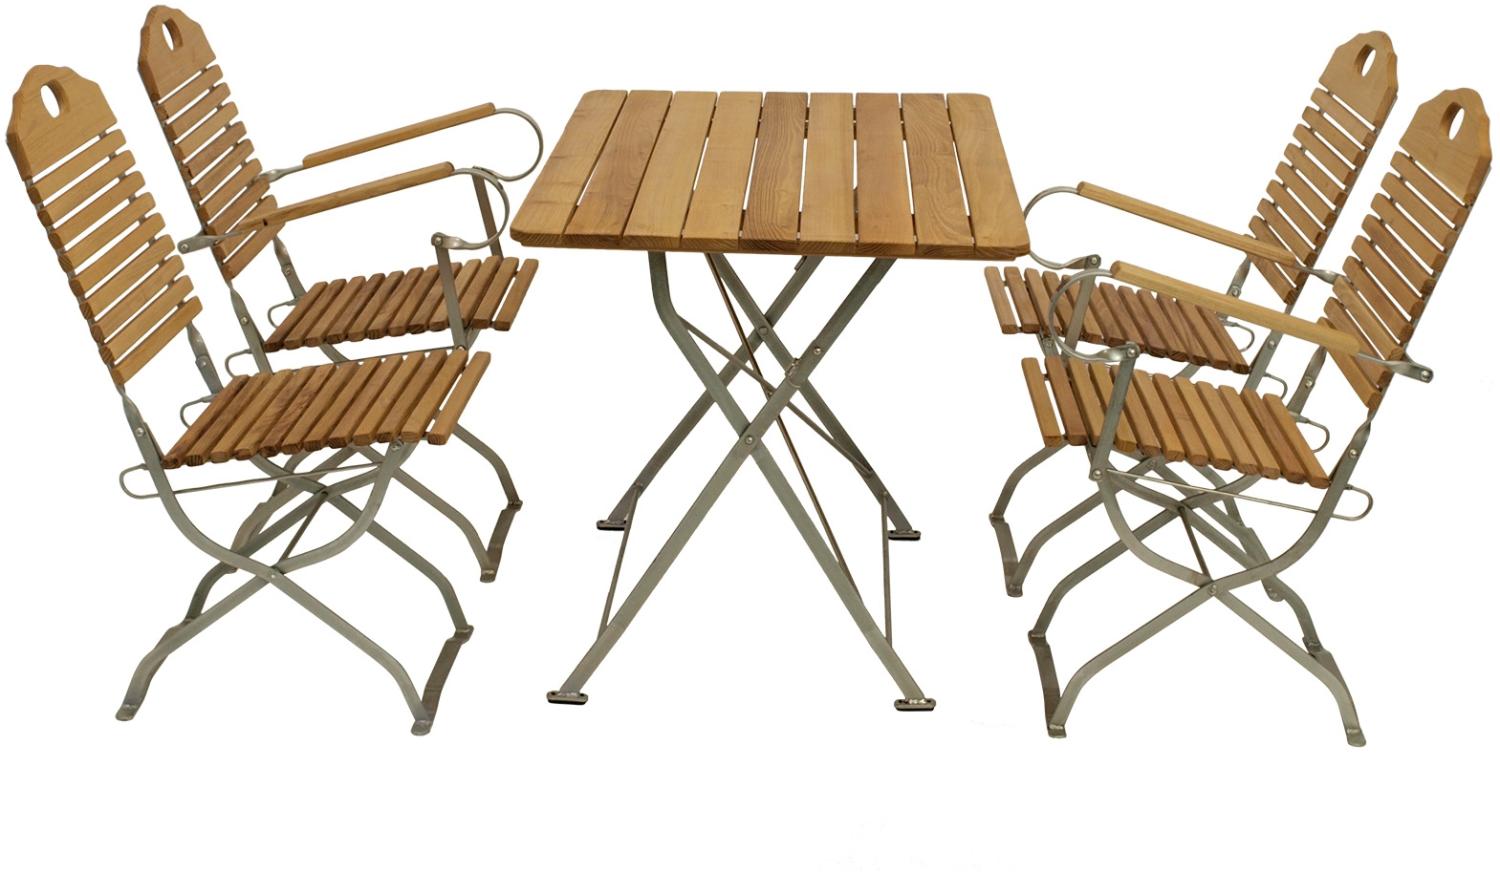 Kurgarten - Garnitur BAD TÖLZ 5-teilig (2x Stuhl, 2x Armlehnensessel, 1x Tisch 70x110cm), Flachstahl verzinkt + Robinie, klappbar Bild 1